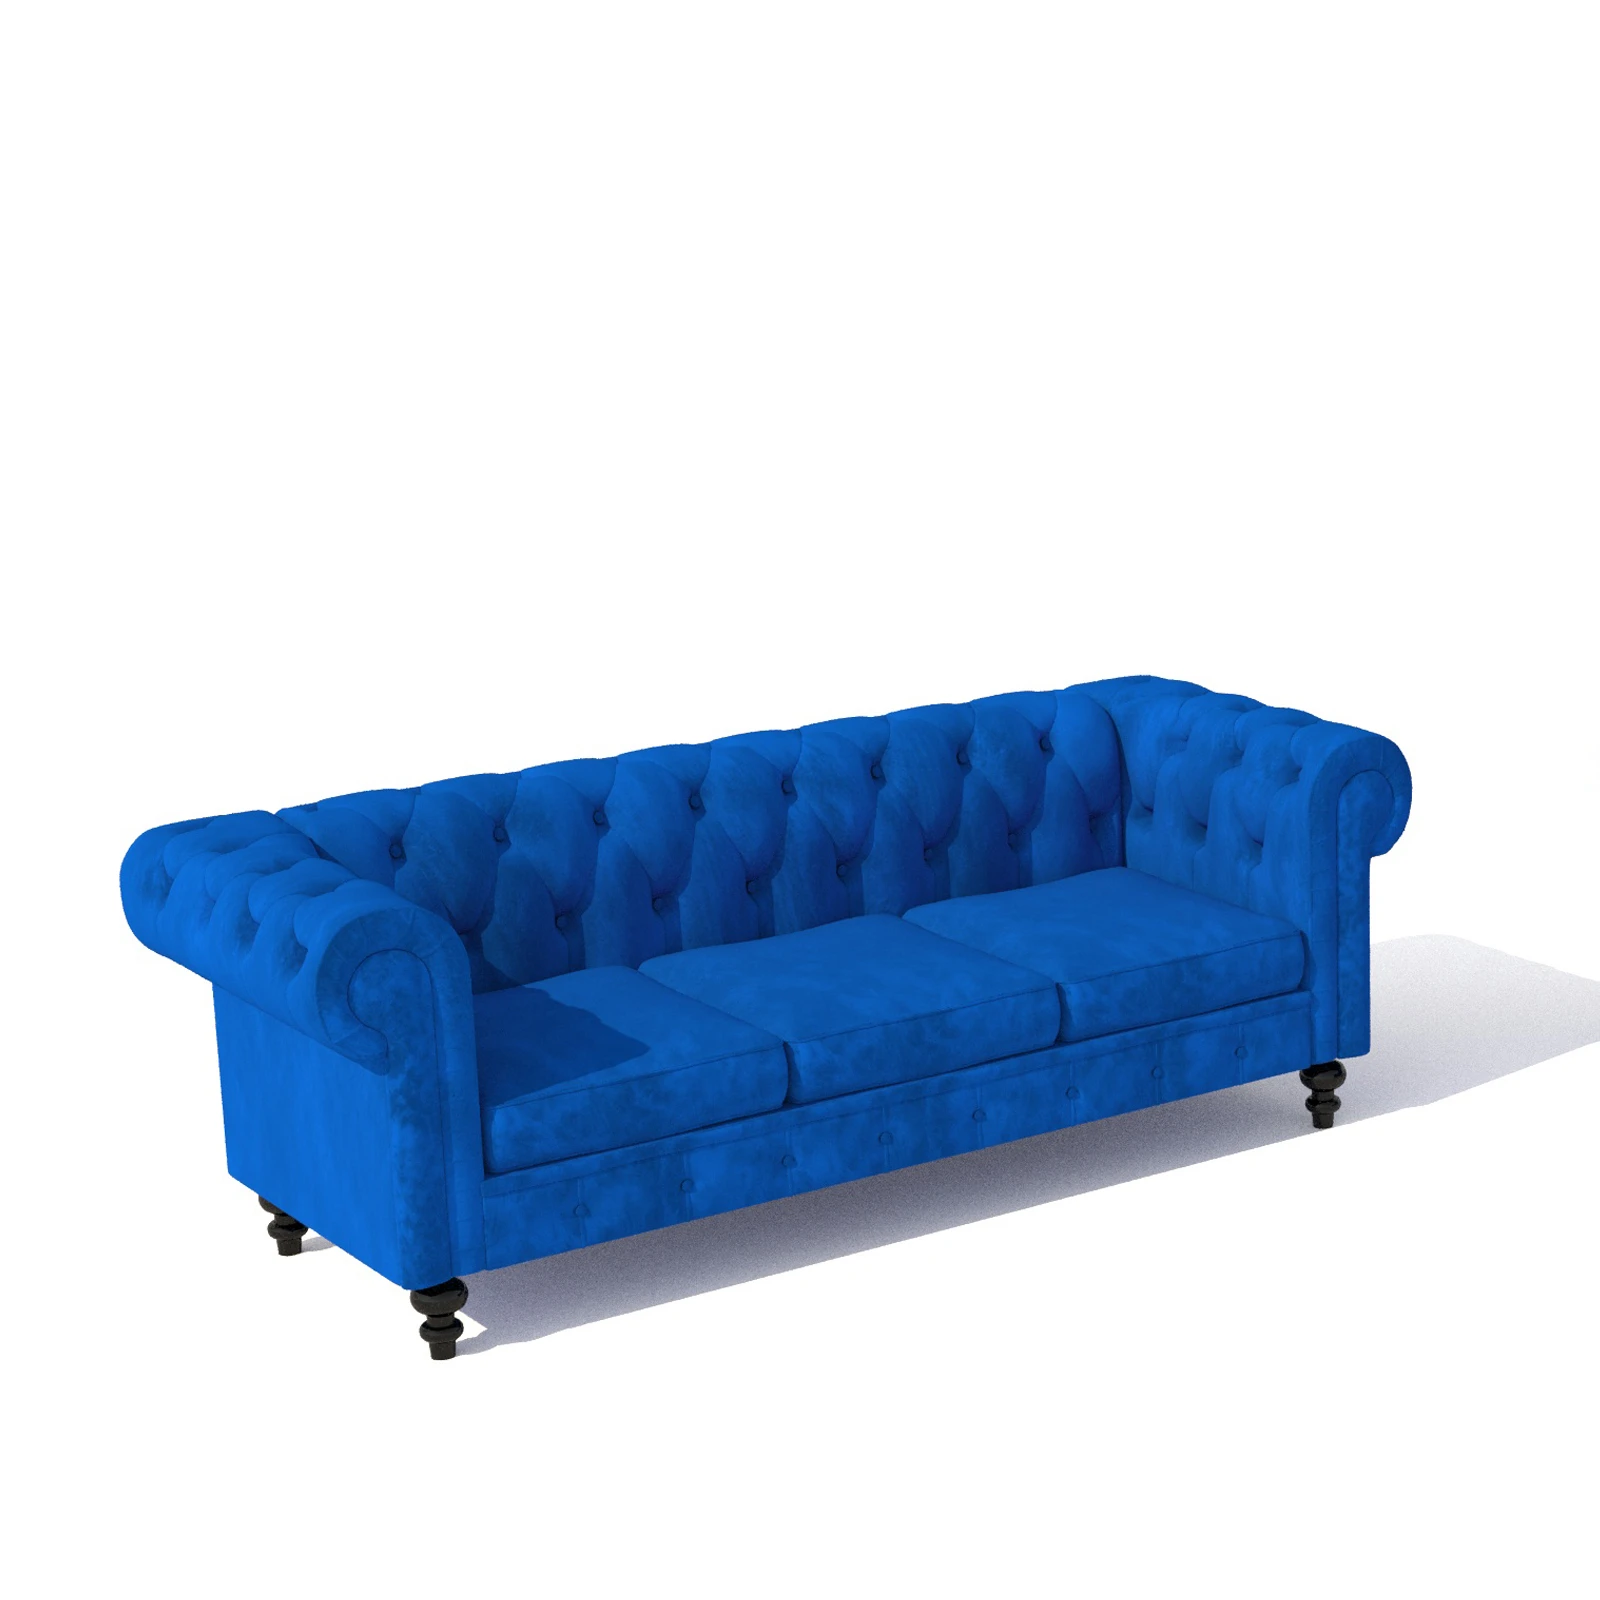 

Sofa sectional modern hot elegant luxury living room sofas blue velvet sofa set furniture, Grey/blue